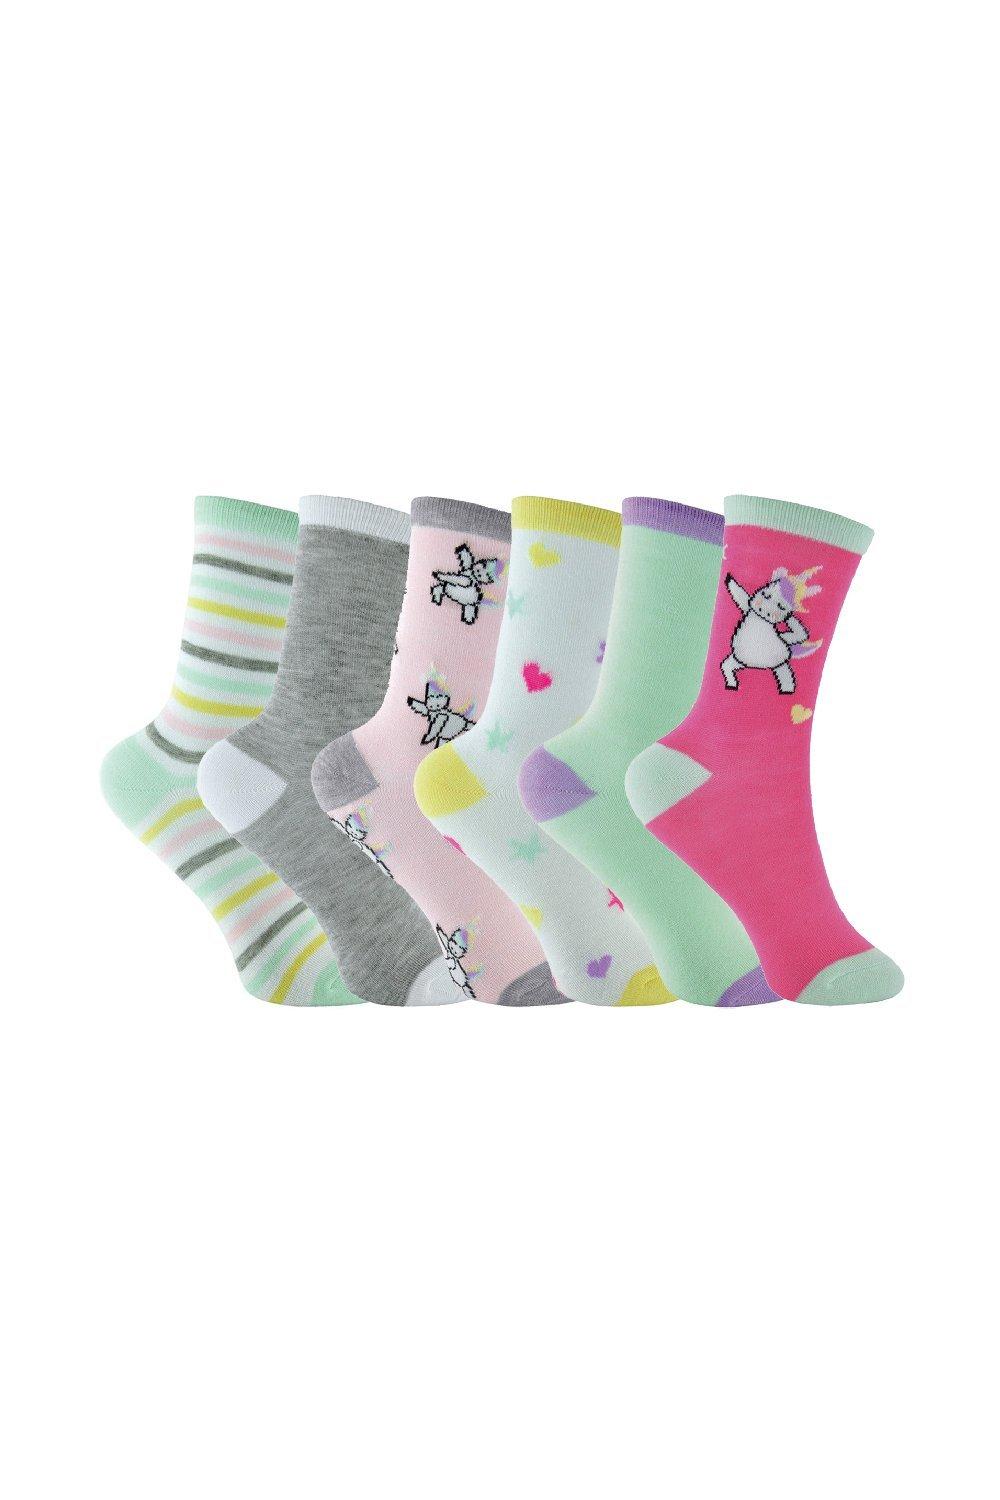 6 Pair Pastel Novelty Unicorn Socks Birthday Christmas Gift